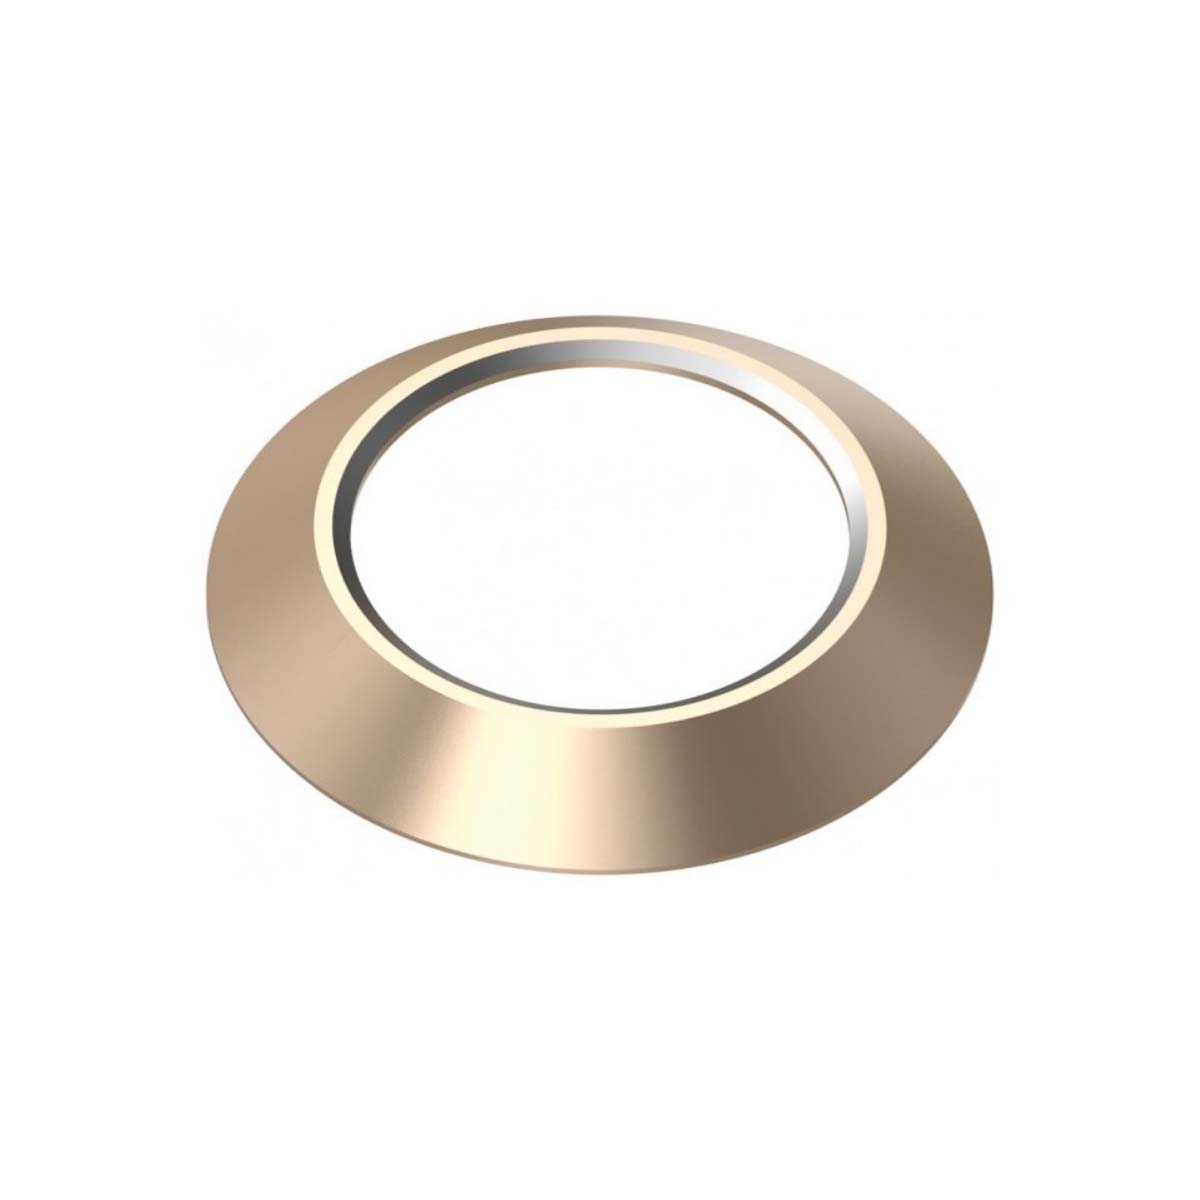 Ободок BASEUS Metal Lens Protection Ring на заднюю камеру для APPLE iPhone 7, iPhone 8, цвет окантовки золотистый